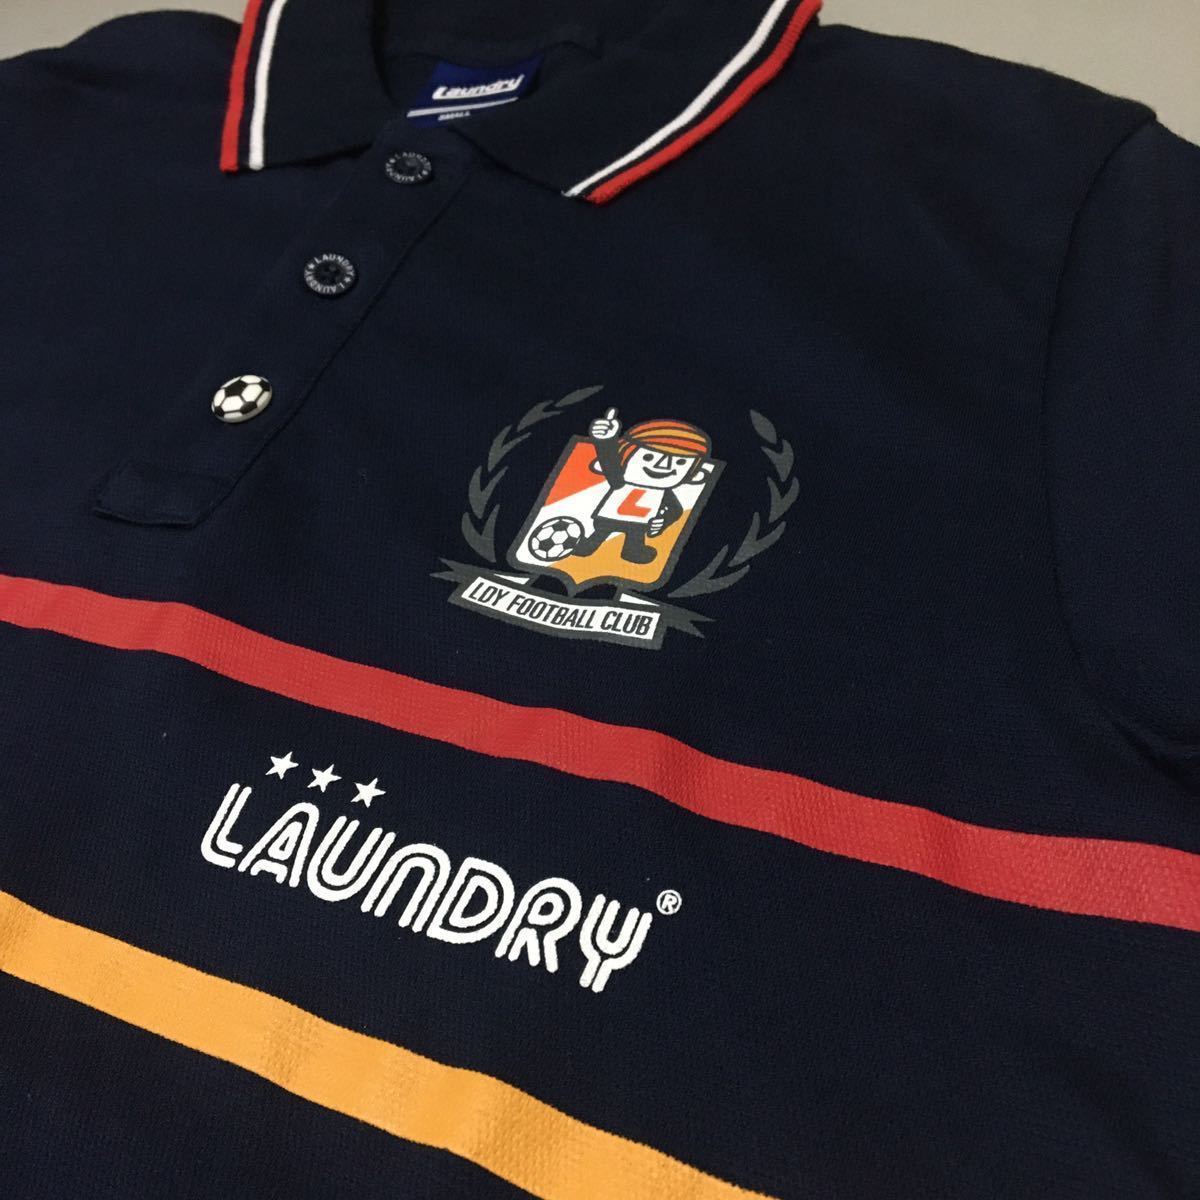 【美品・良品】ランドリー Laundry フットボール サッカー ポロシャツ 半袖 ネイビー サッカーボール メンズ Sサイズ プリント ∬▽